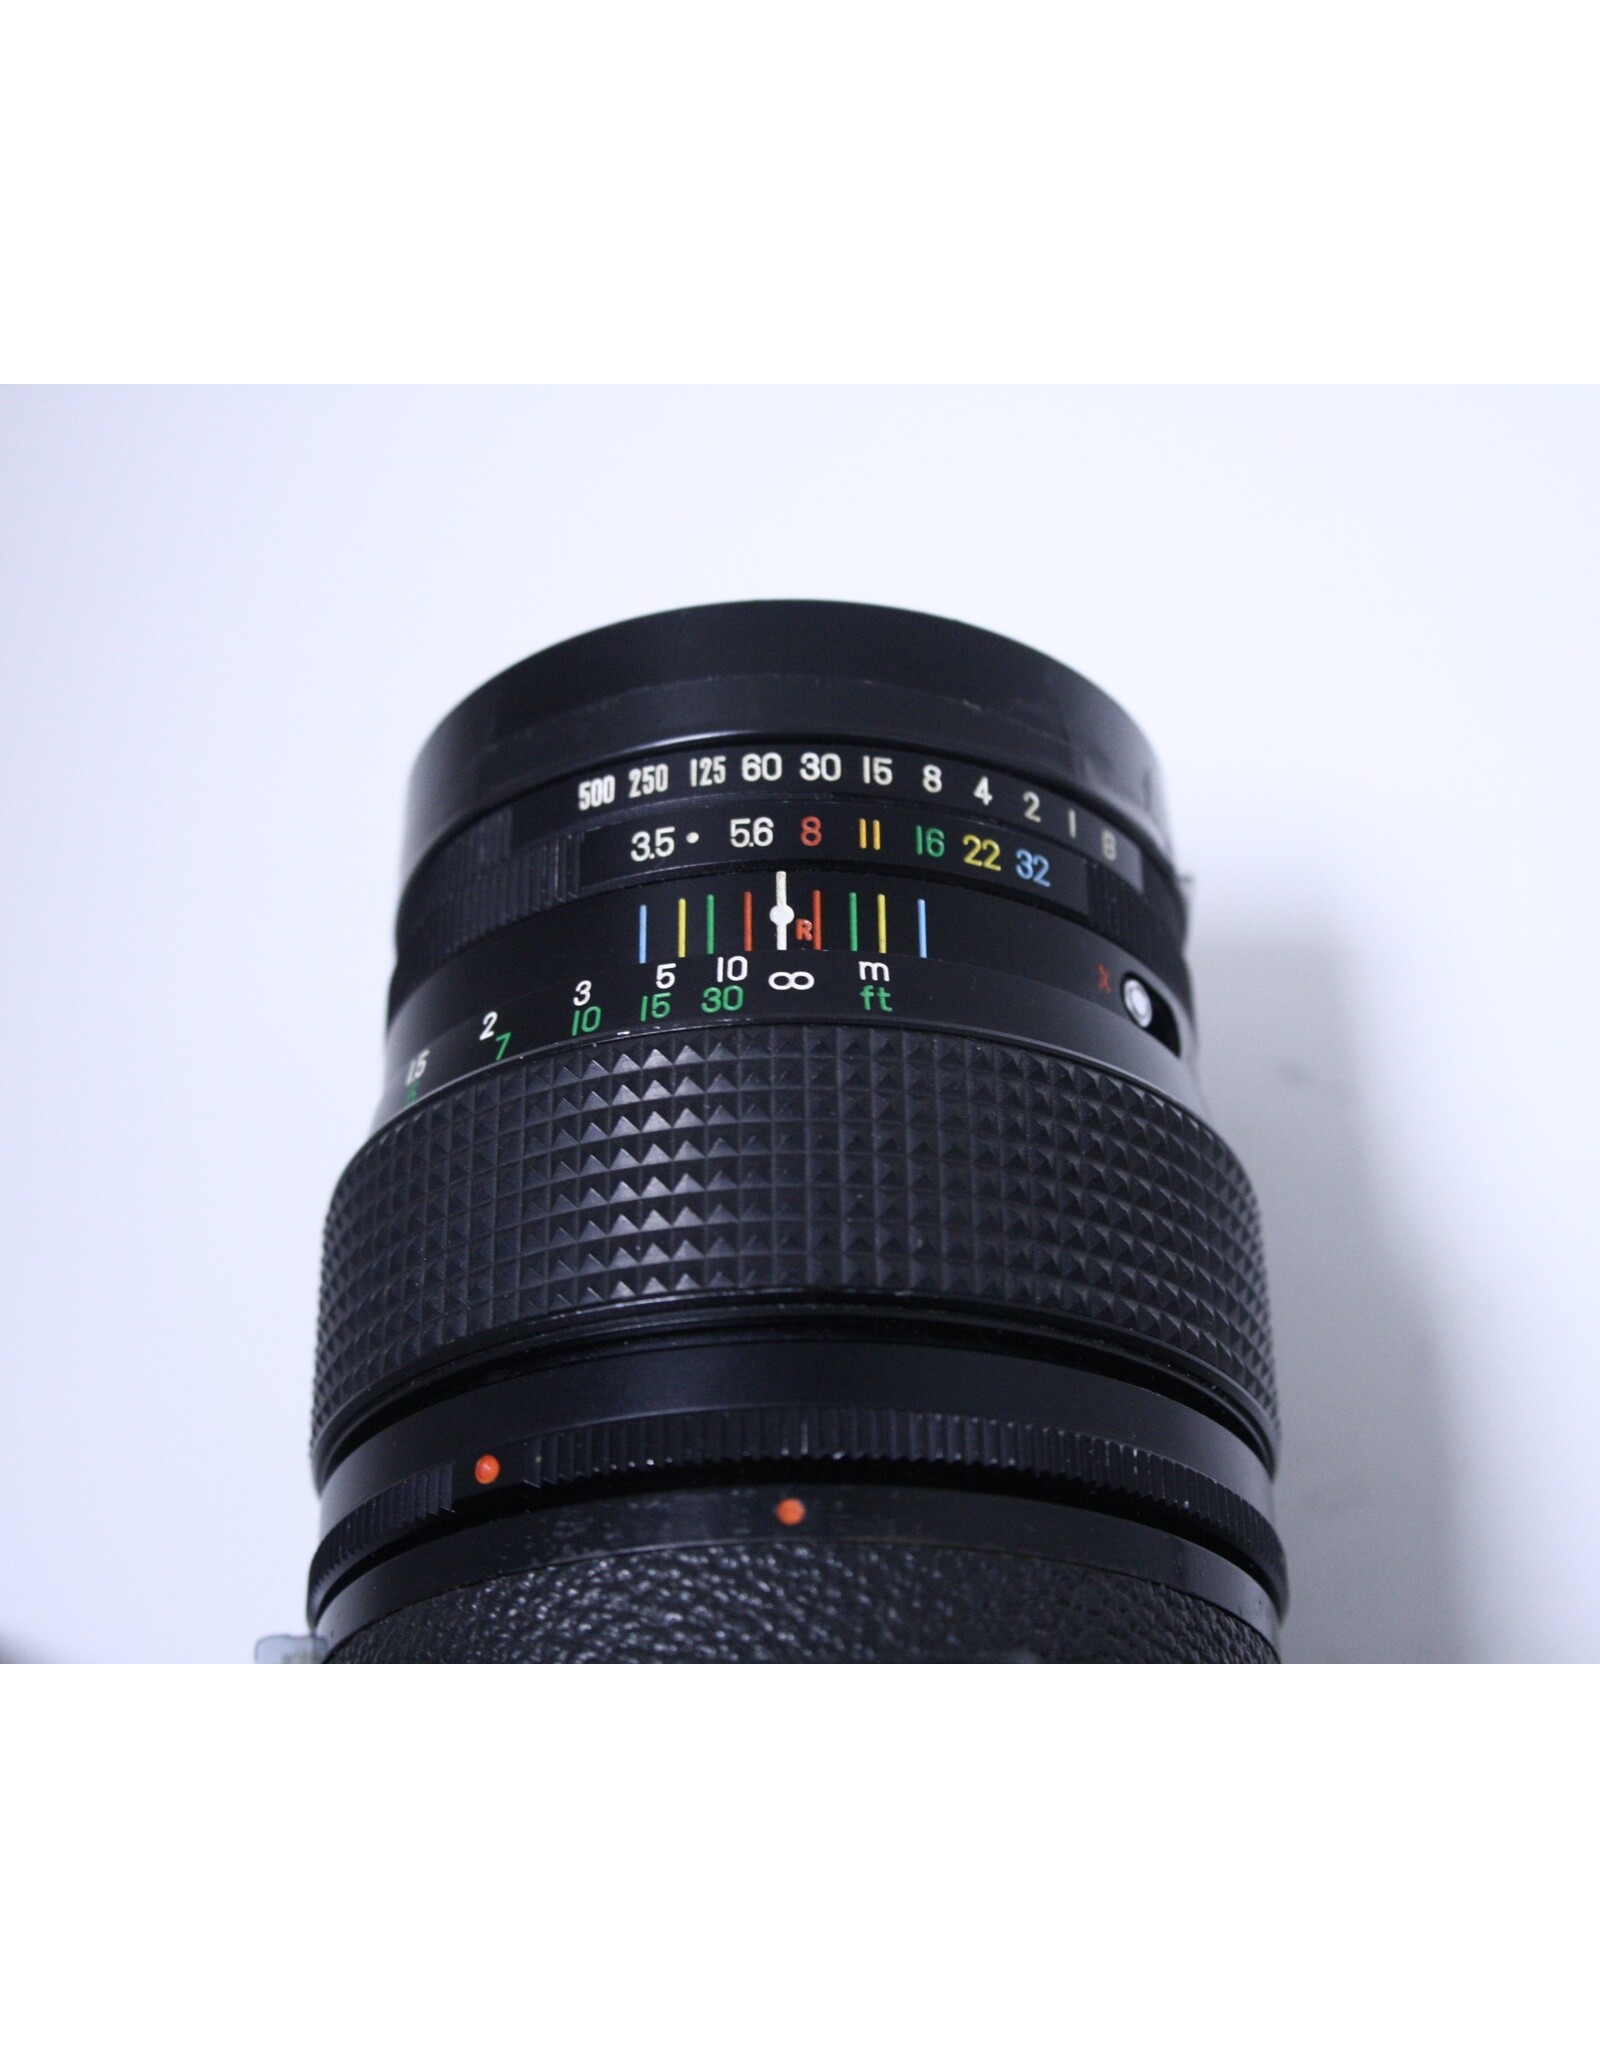 Fujinon S Lens | sincovaga.com.br